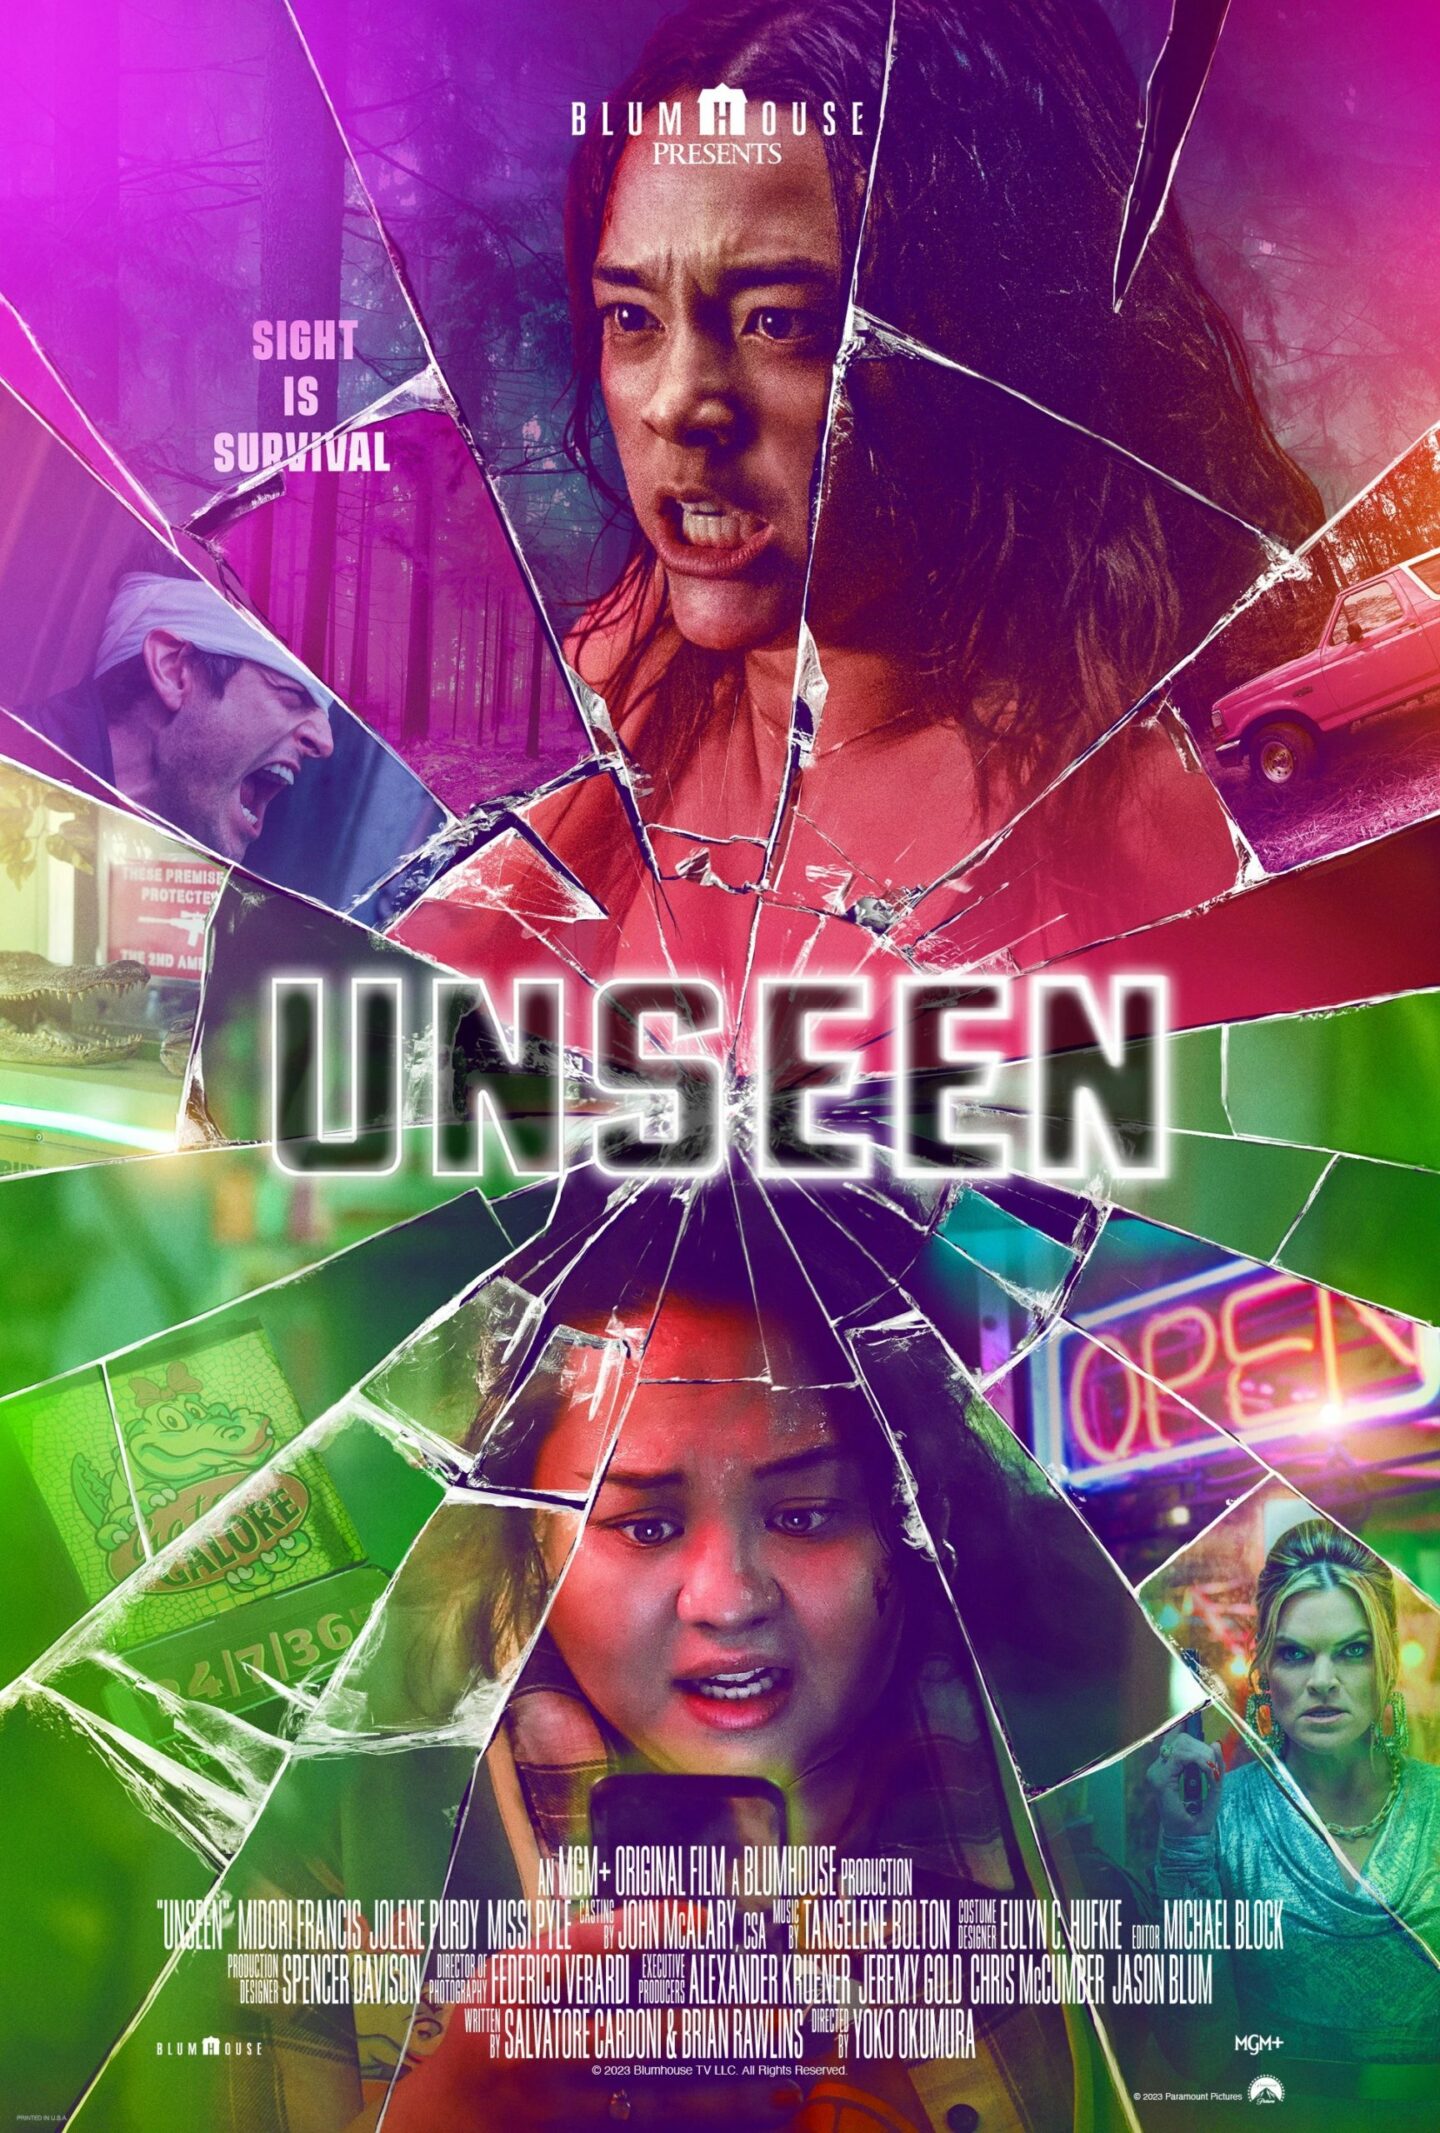 Unseen - Teaser Poster